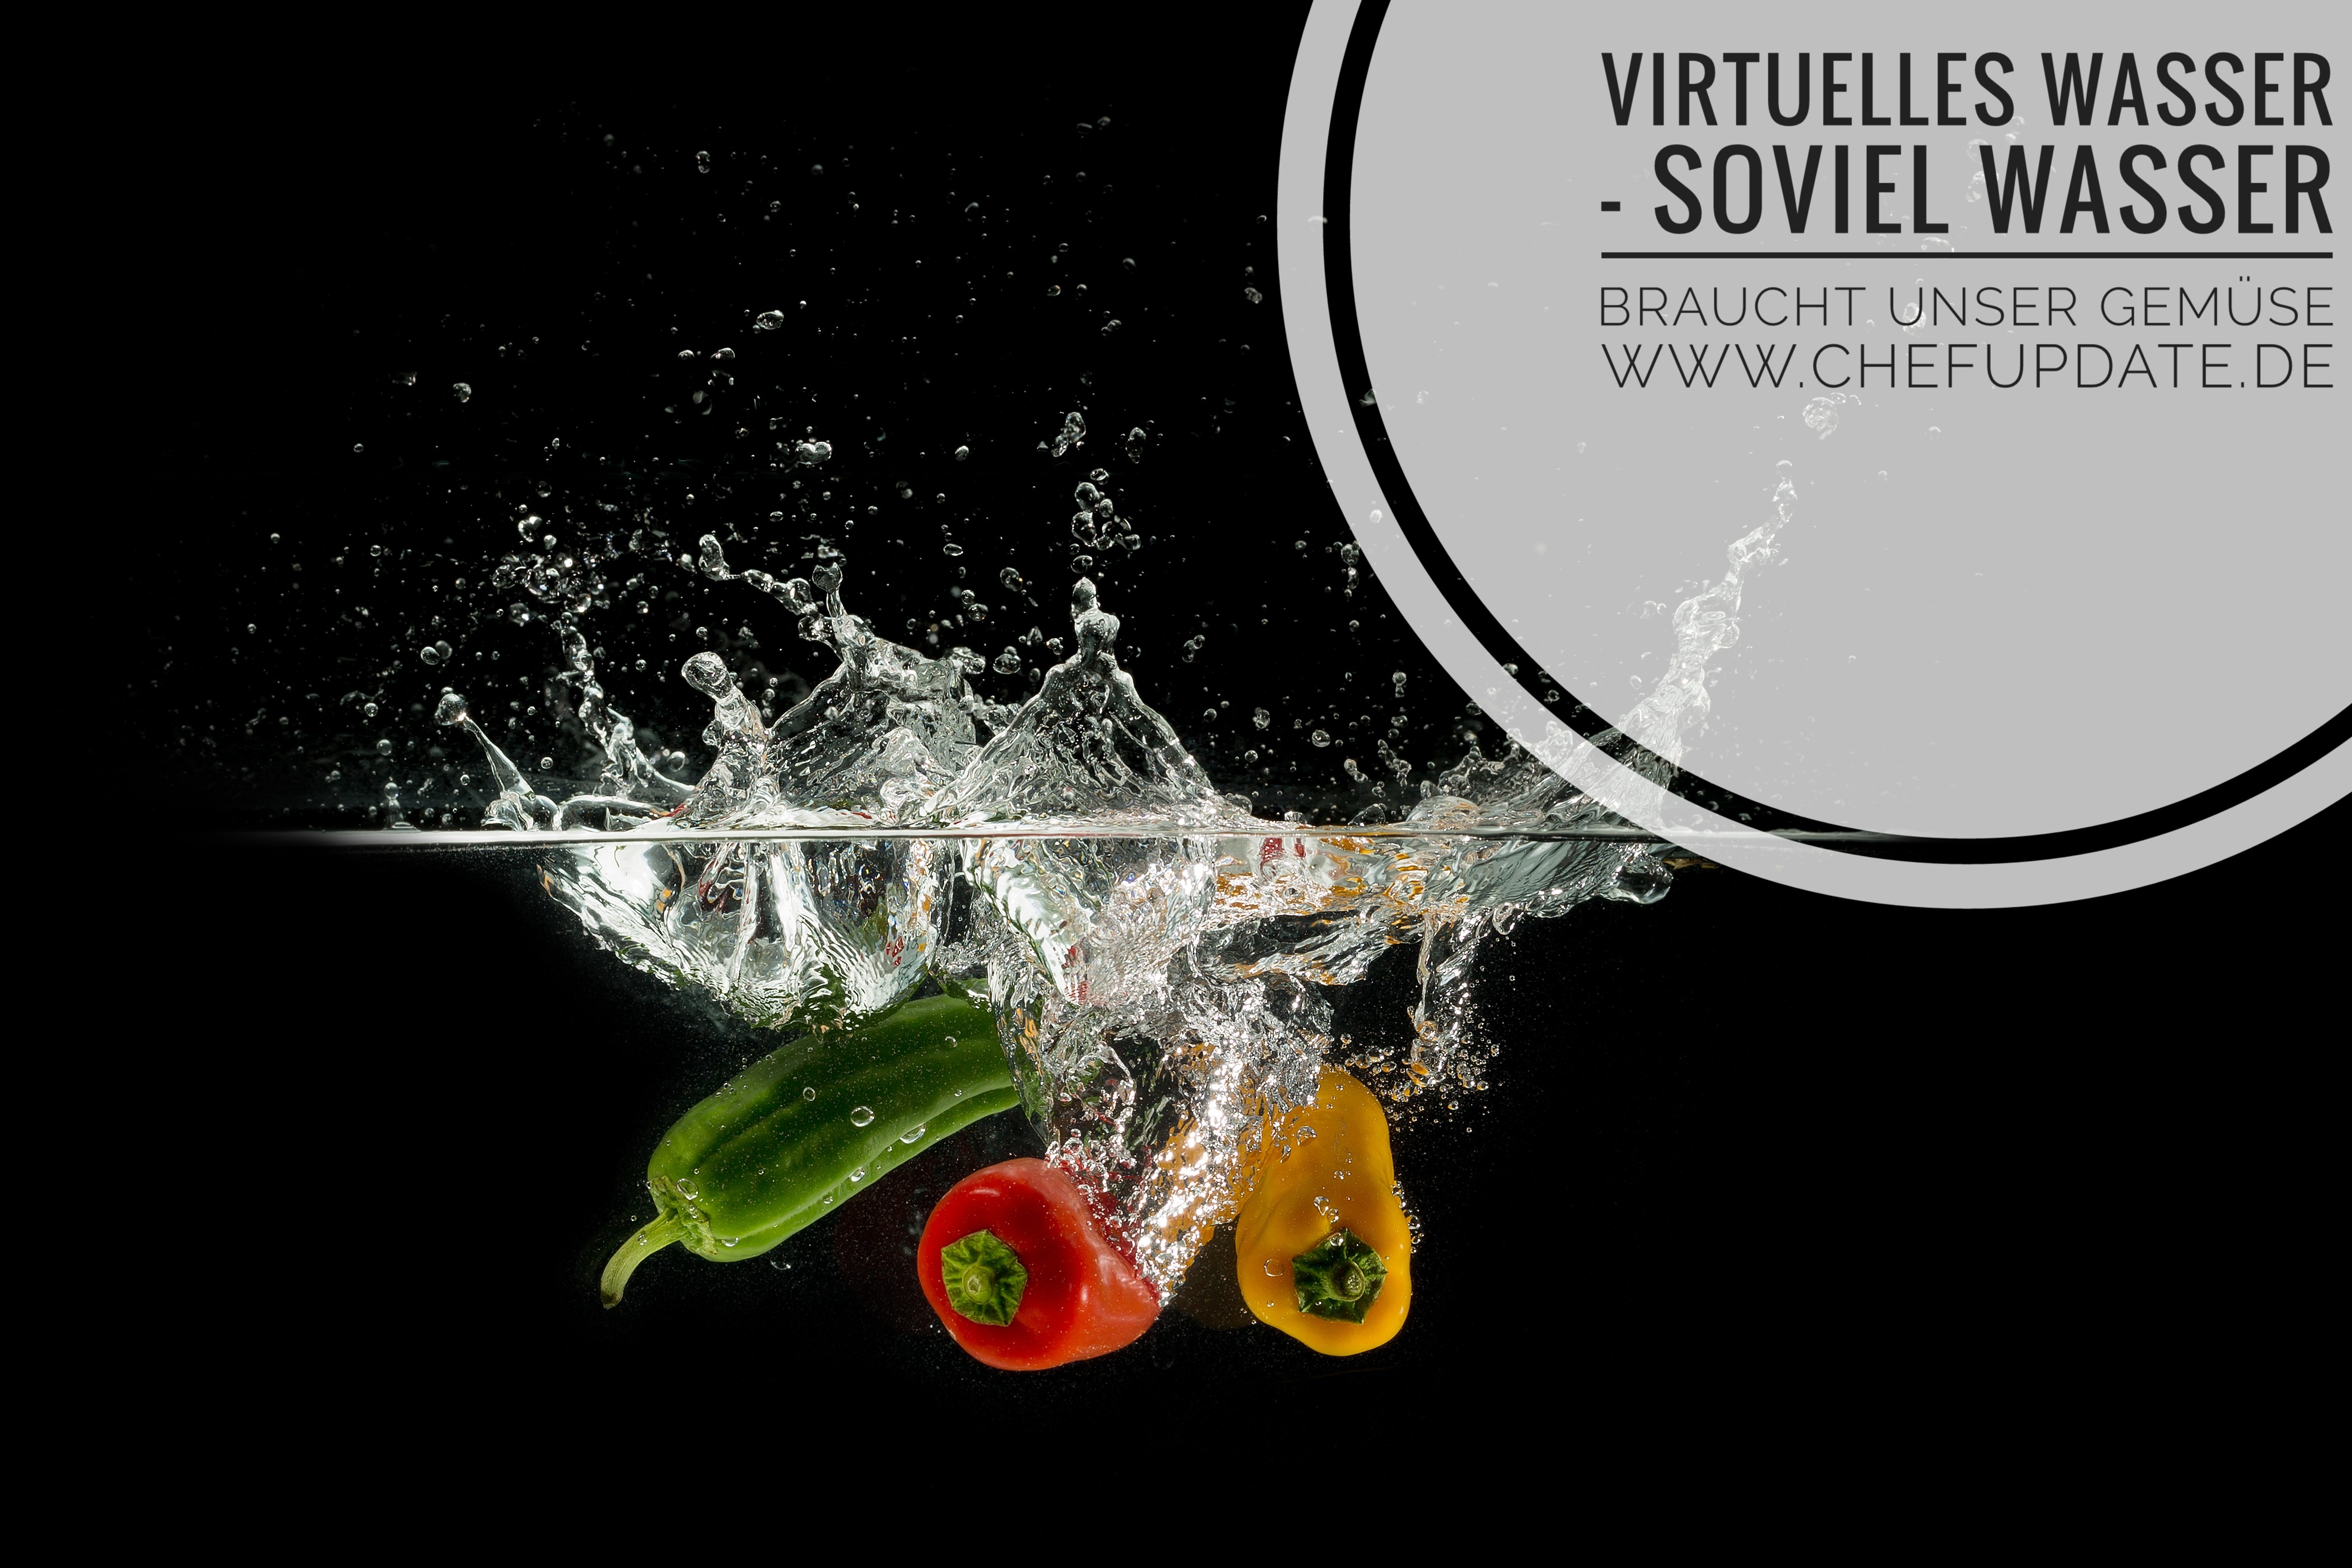 Virtuelles Wasser – Soviel Wasser brauchten unsere Lebensmittel